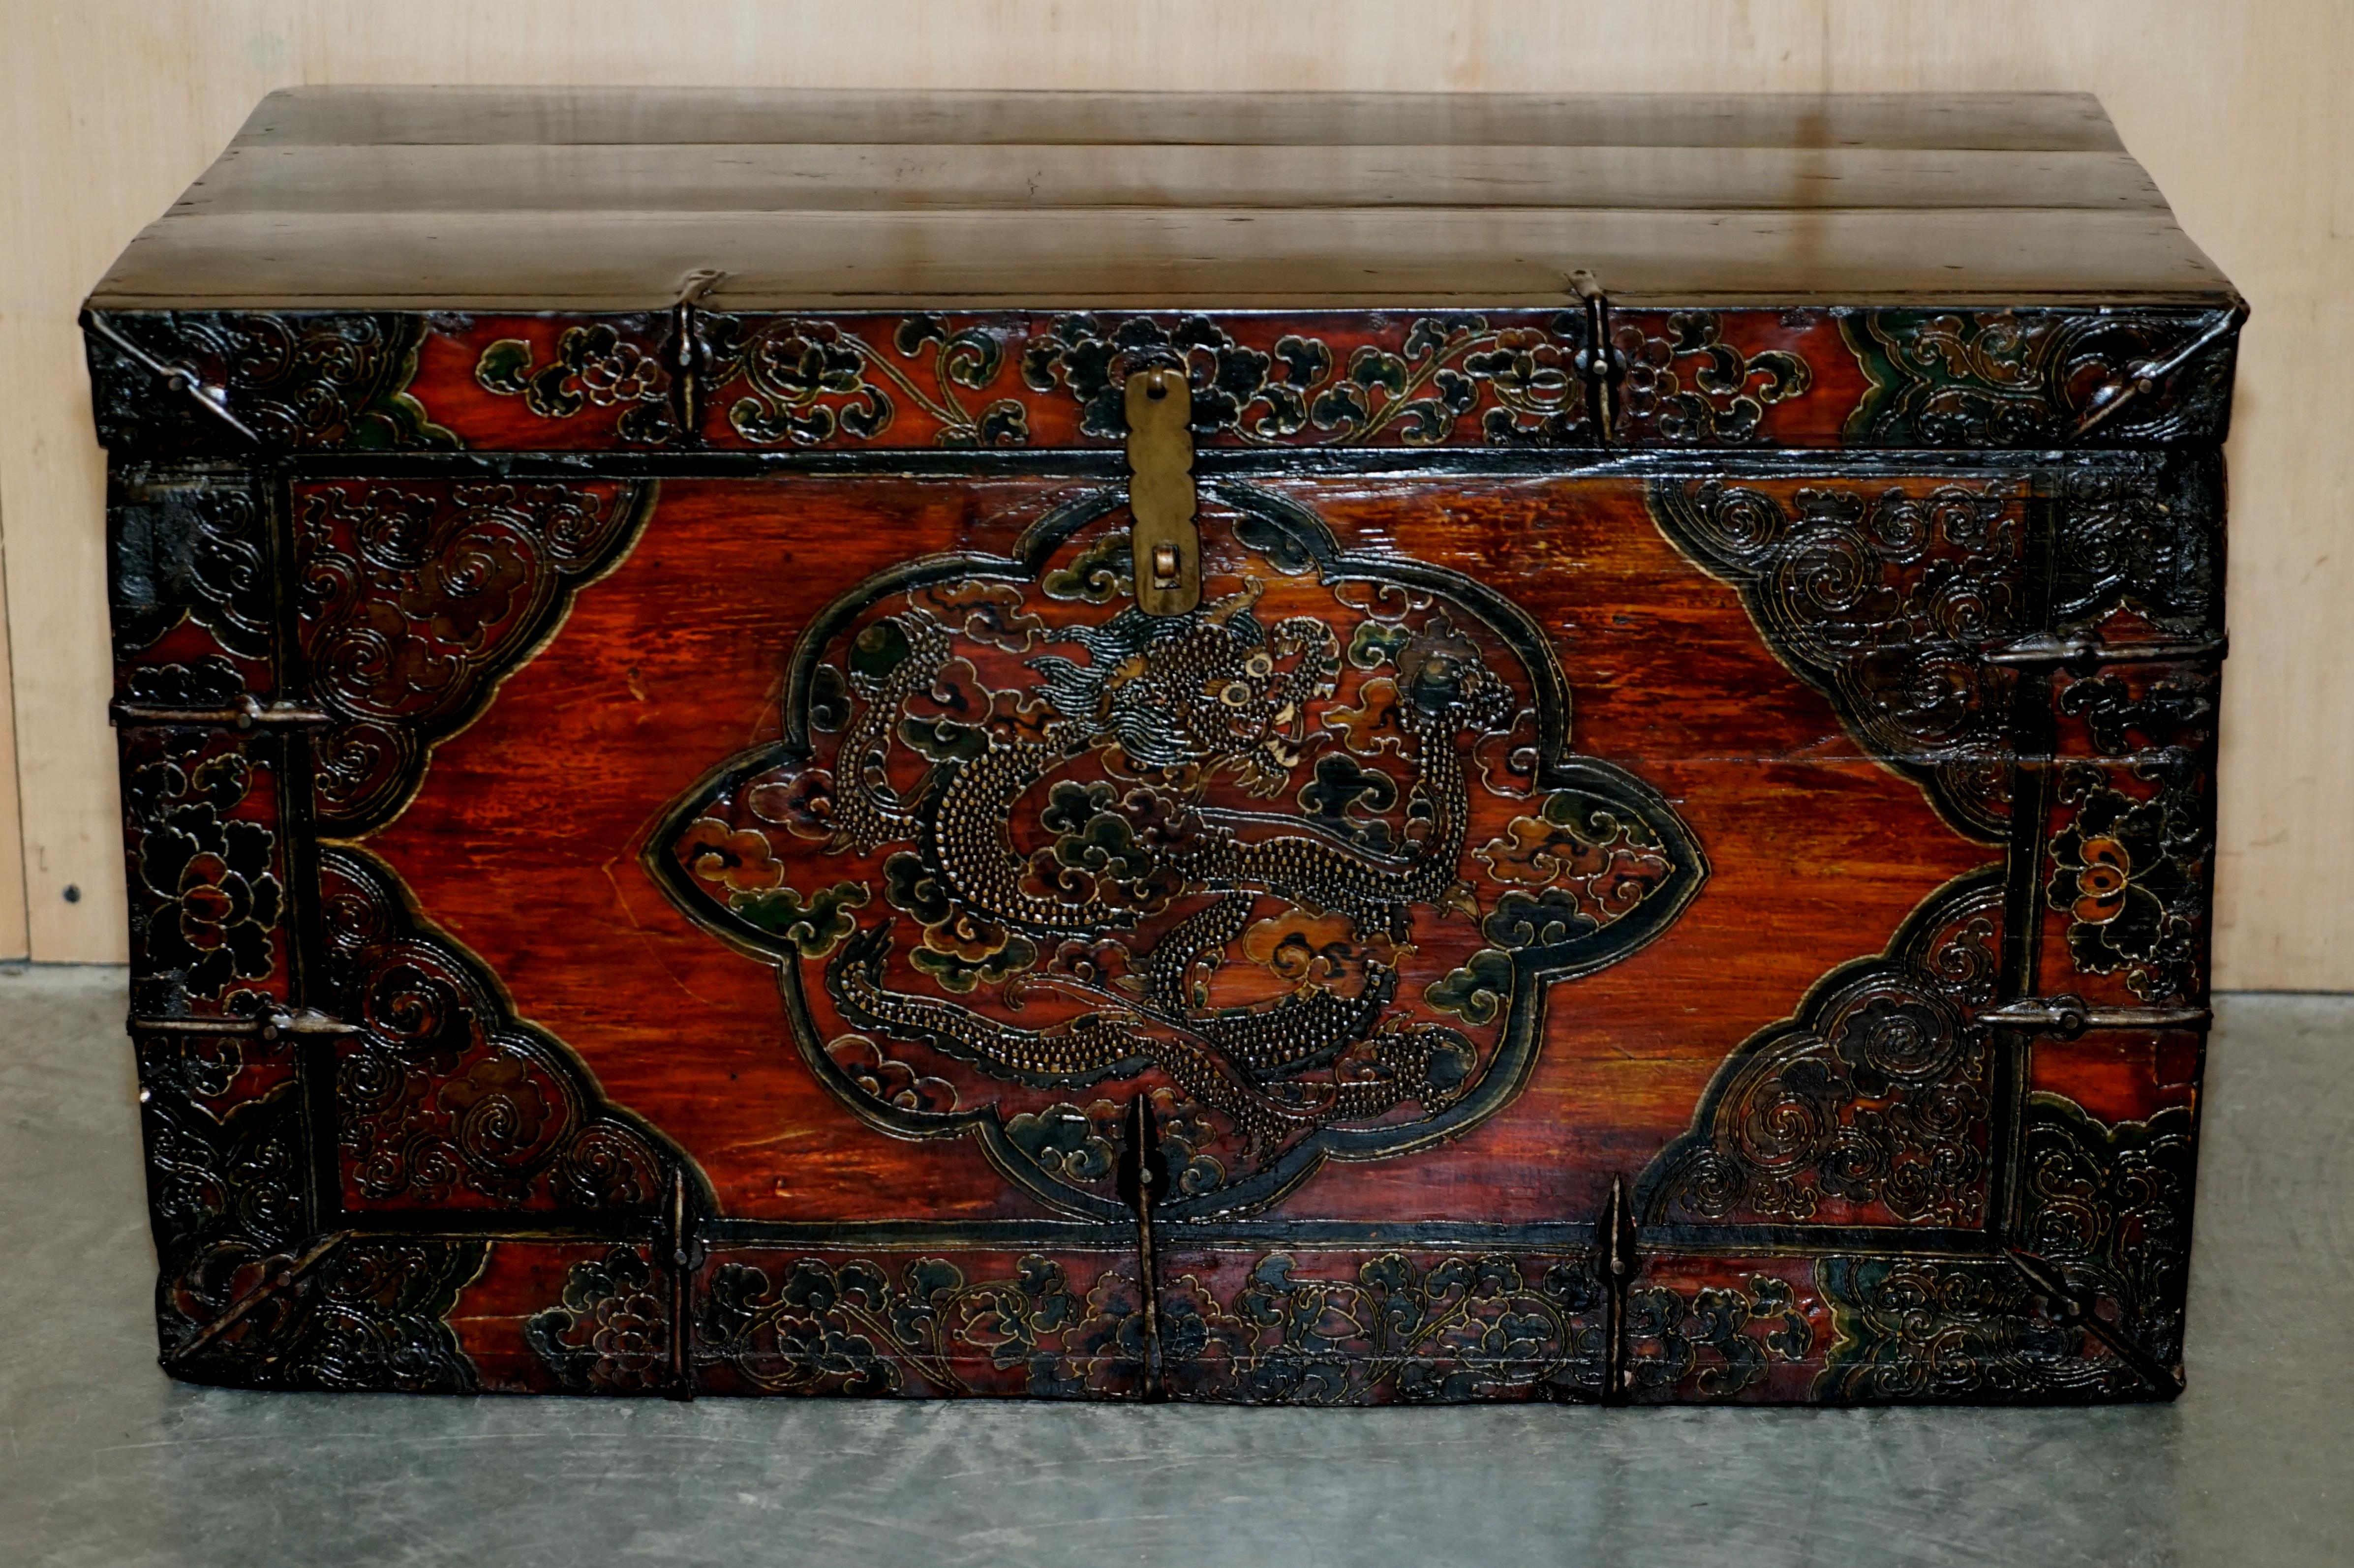 Nous sommes ravis d'offrir à la vente cette superbe malle tibétaine ancienne peinte en polychromie représentant des dragons. 

Il s'agit d'un meuble d'art très beau et très bien fait. C'est le meilleur type d'antiquité, car il est intéressant et